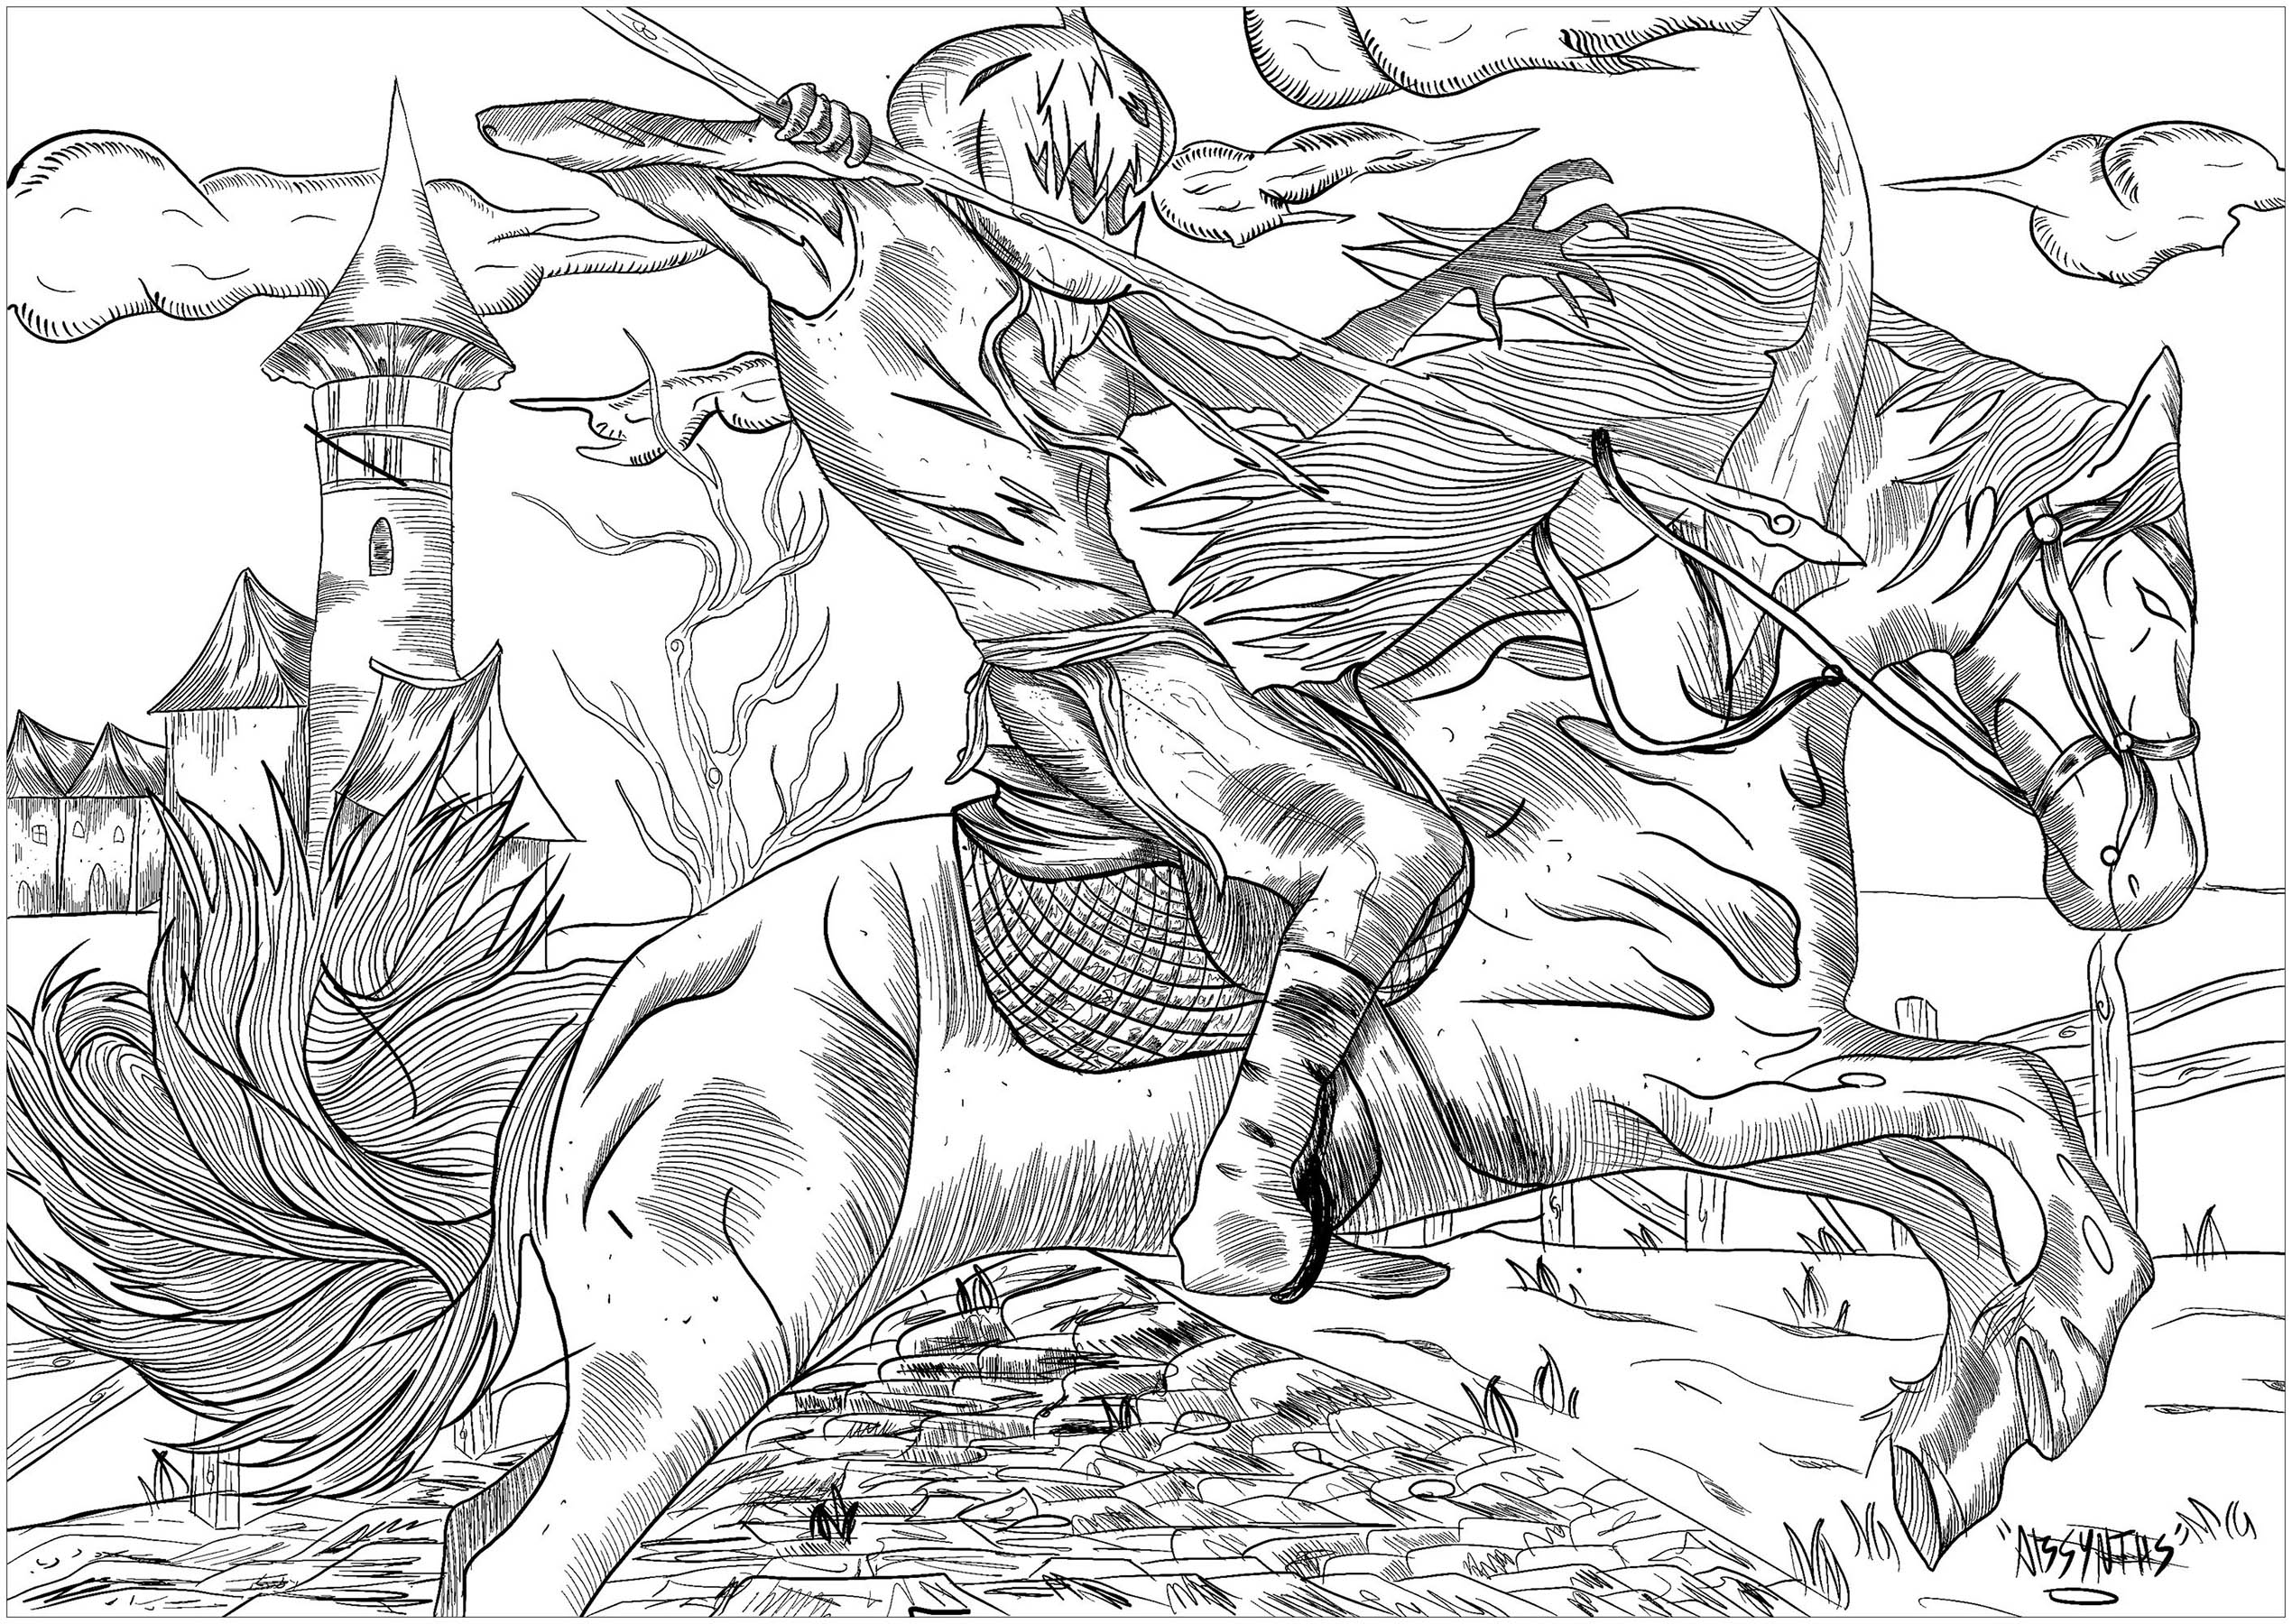 Un caballero malvado con cabeza de calabaza, montado en su caballo fantasmal... ¡Una auténtica pesadilla para colorear !, Artista : Absynths